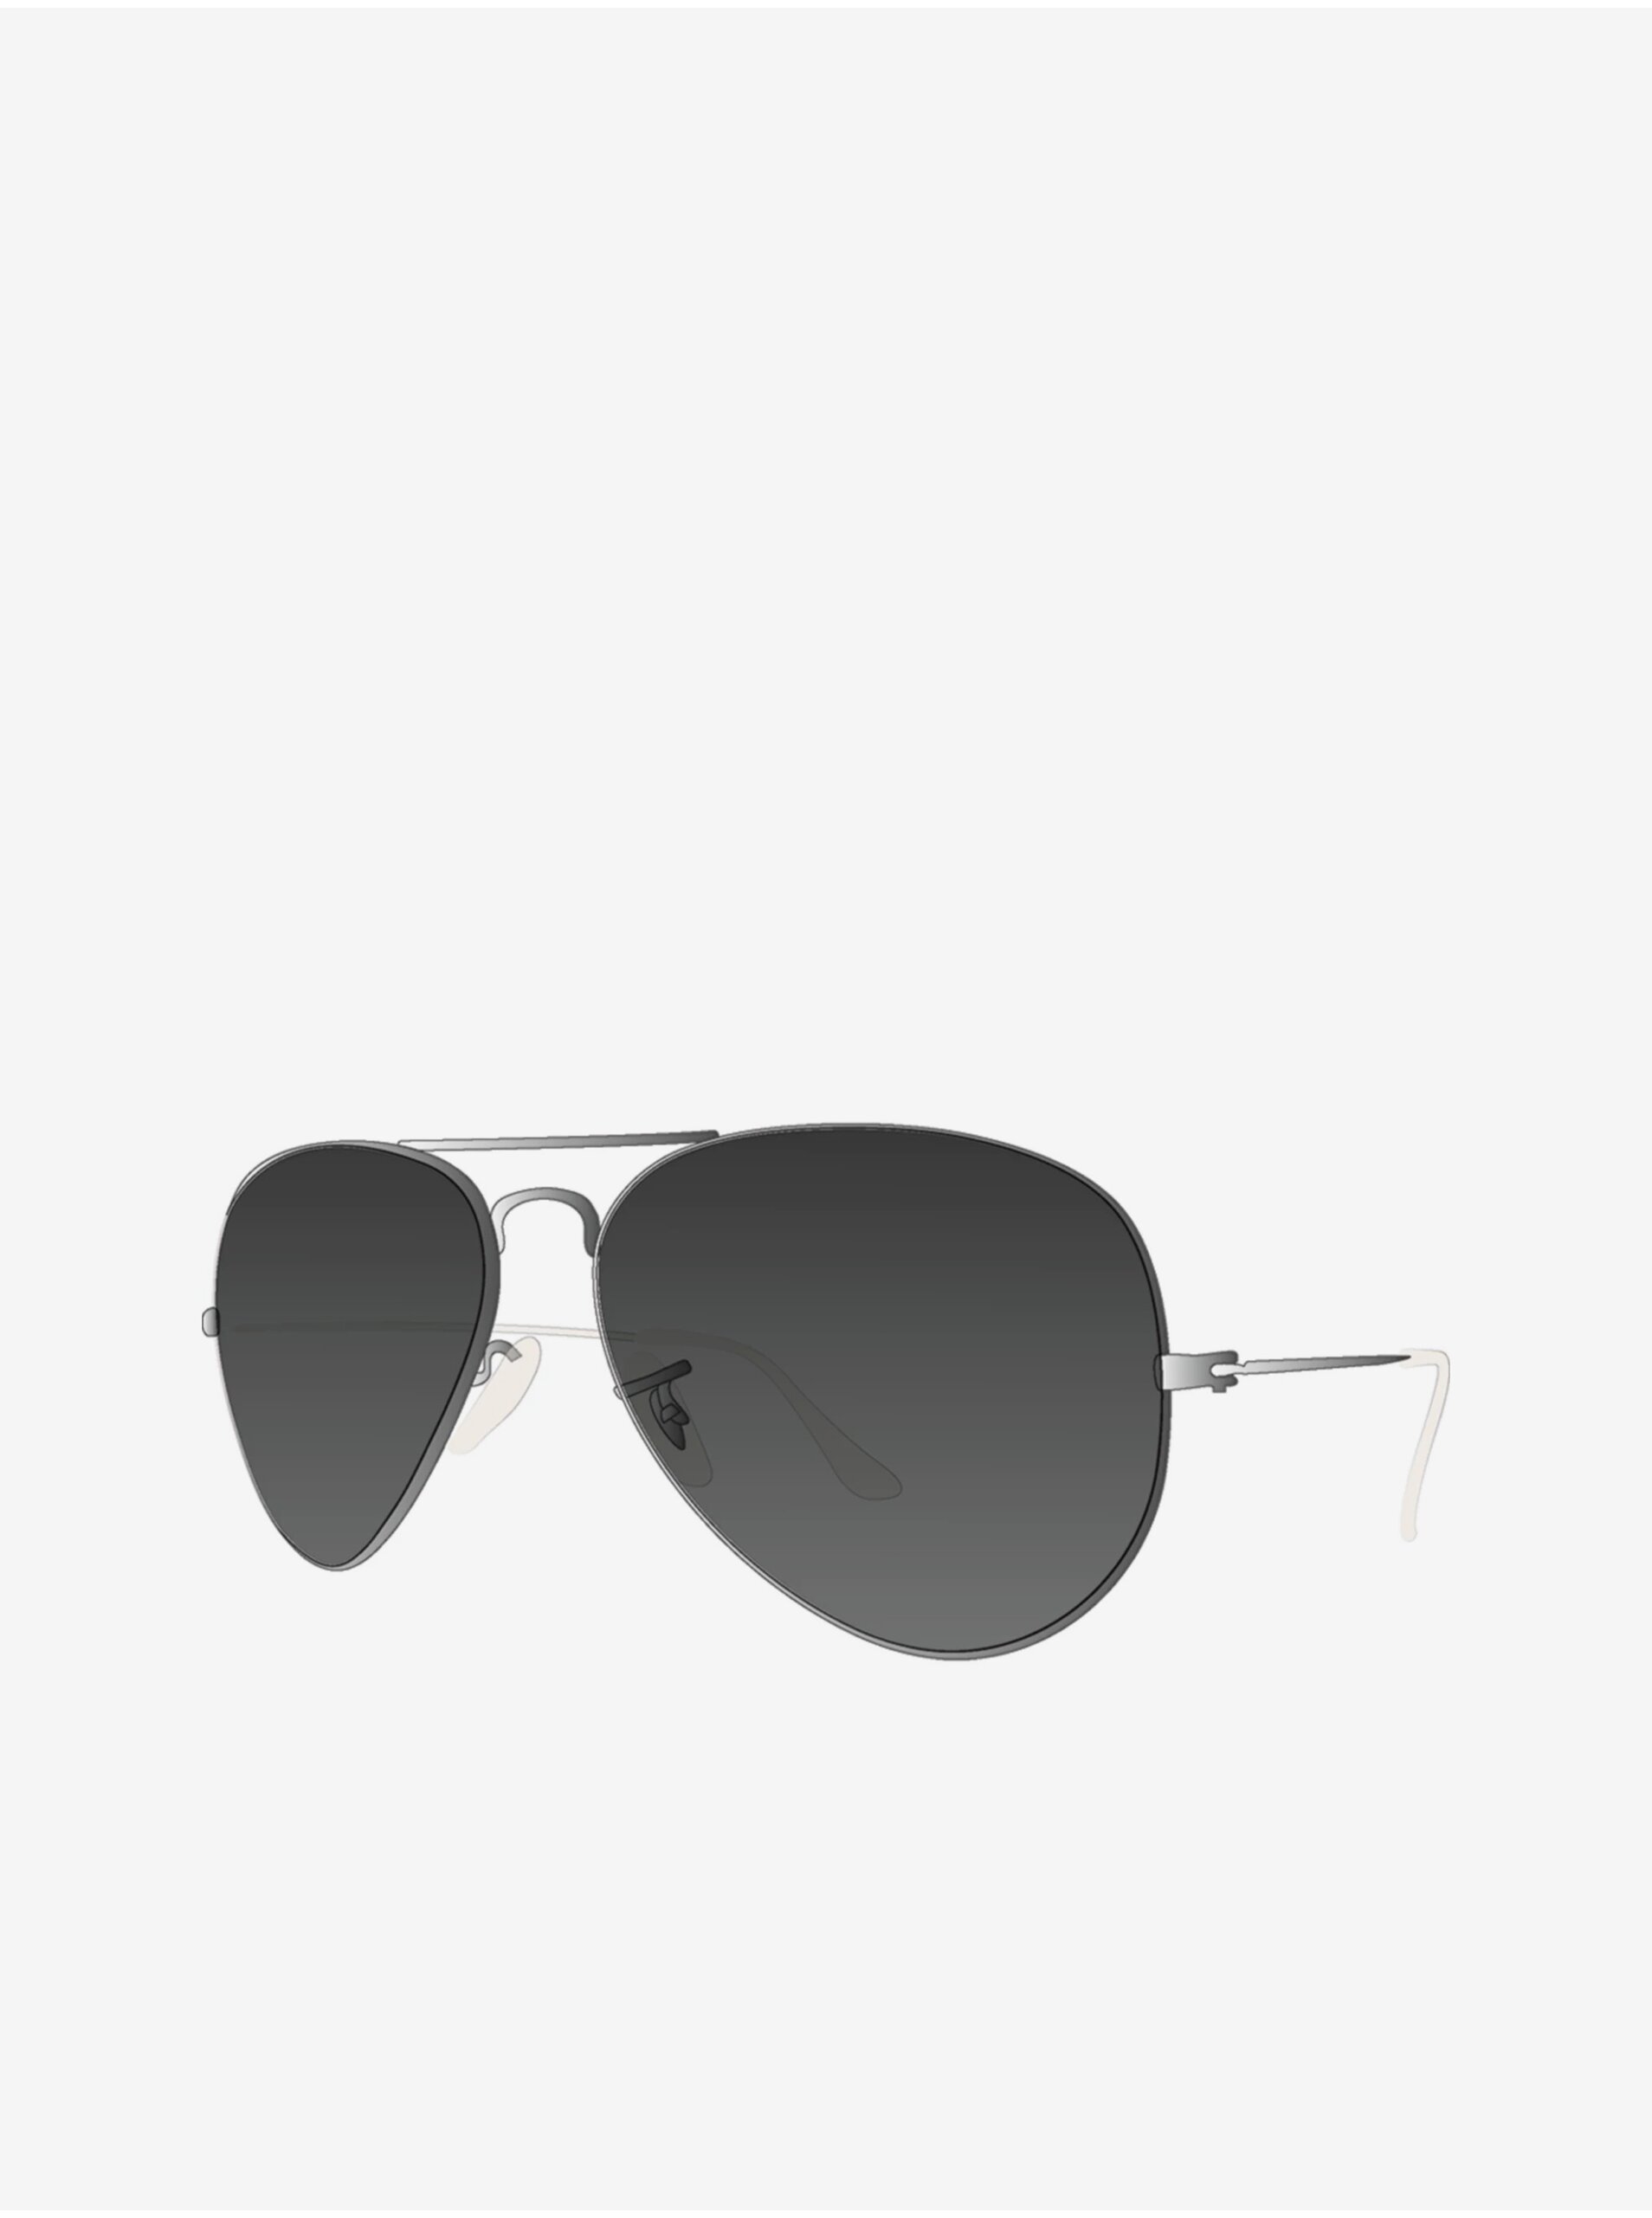 Men's Framed Sunglasses in Silver VANS - Men